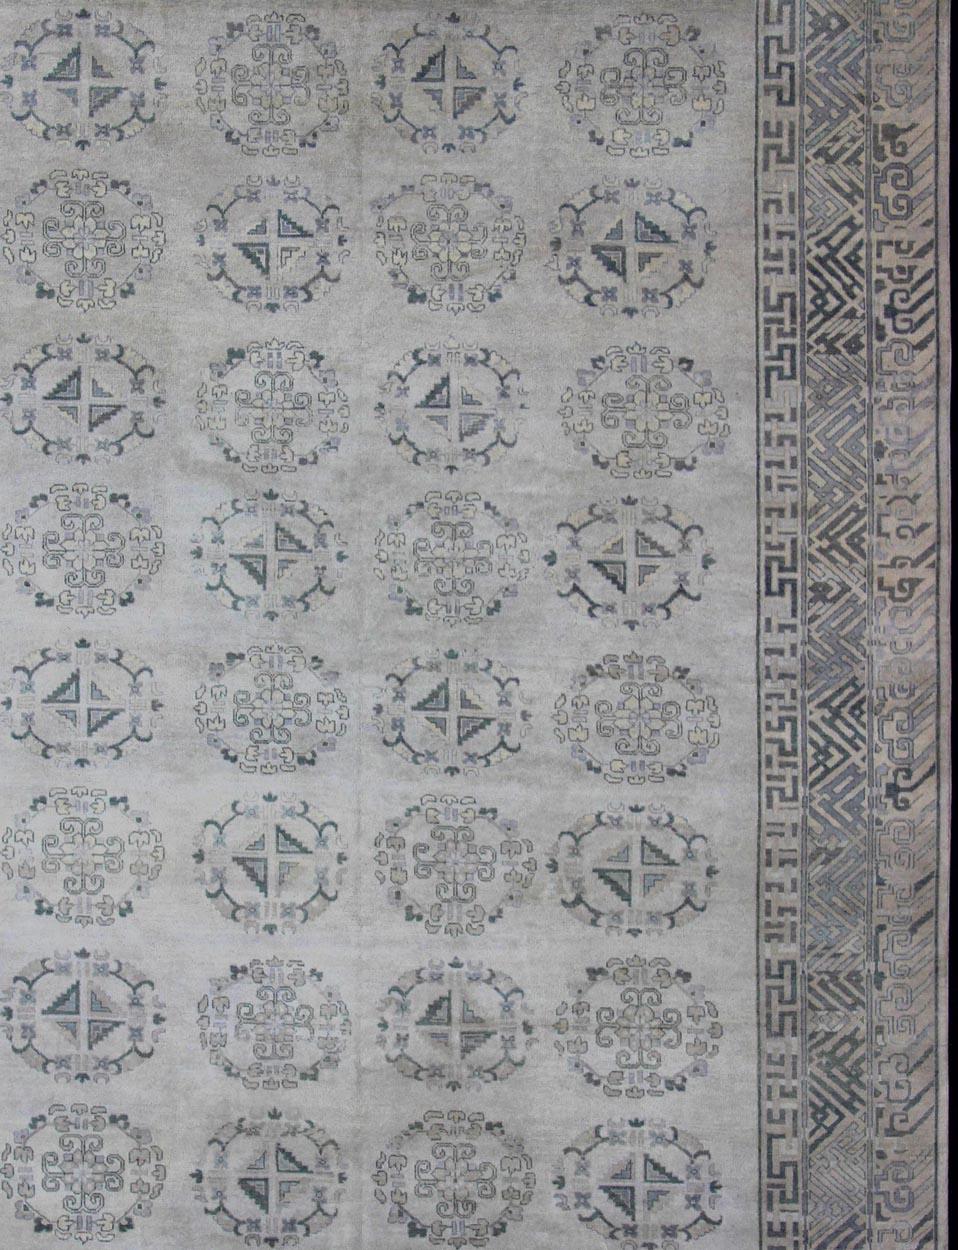 Großer Khotan-Teppich mit silberner, grauer, blaugrauer, anthrazitfarbener und neutraler Farbpalette und Allover-Medaillon-Muster, Teppich OB-9356765, Herkunftsland/Typ: Indien/ Khotan

Dieser handgeknüpfte Khotan-Teppich weist ein schönes 